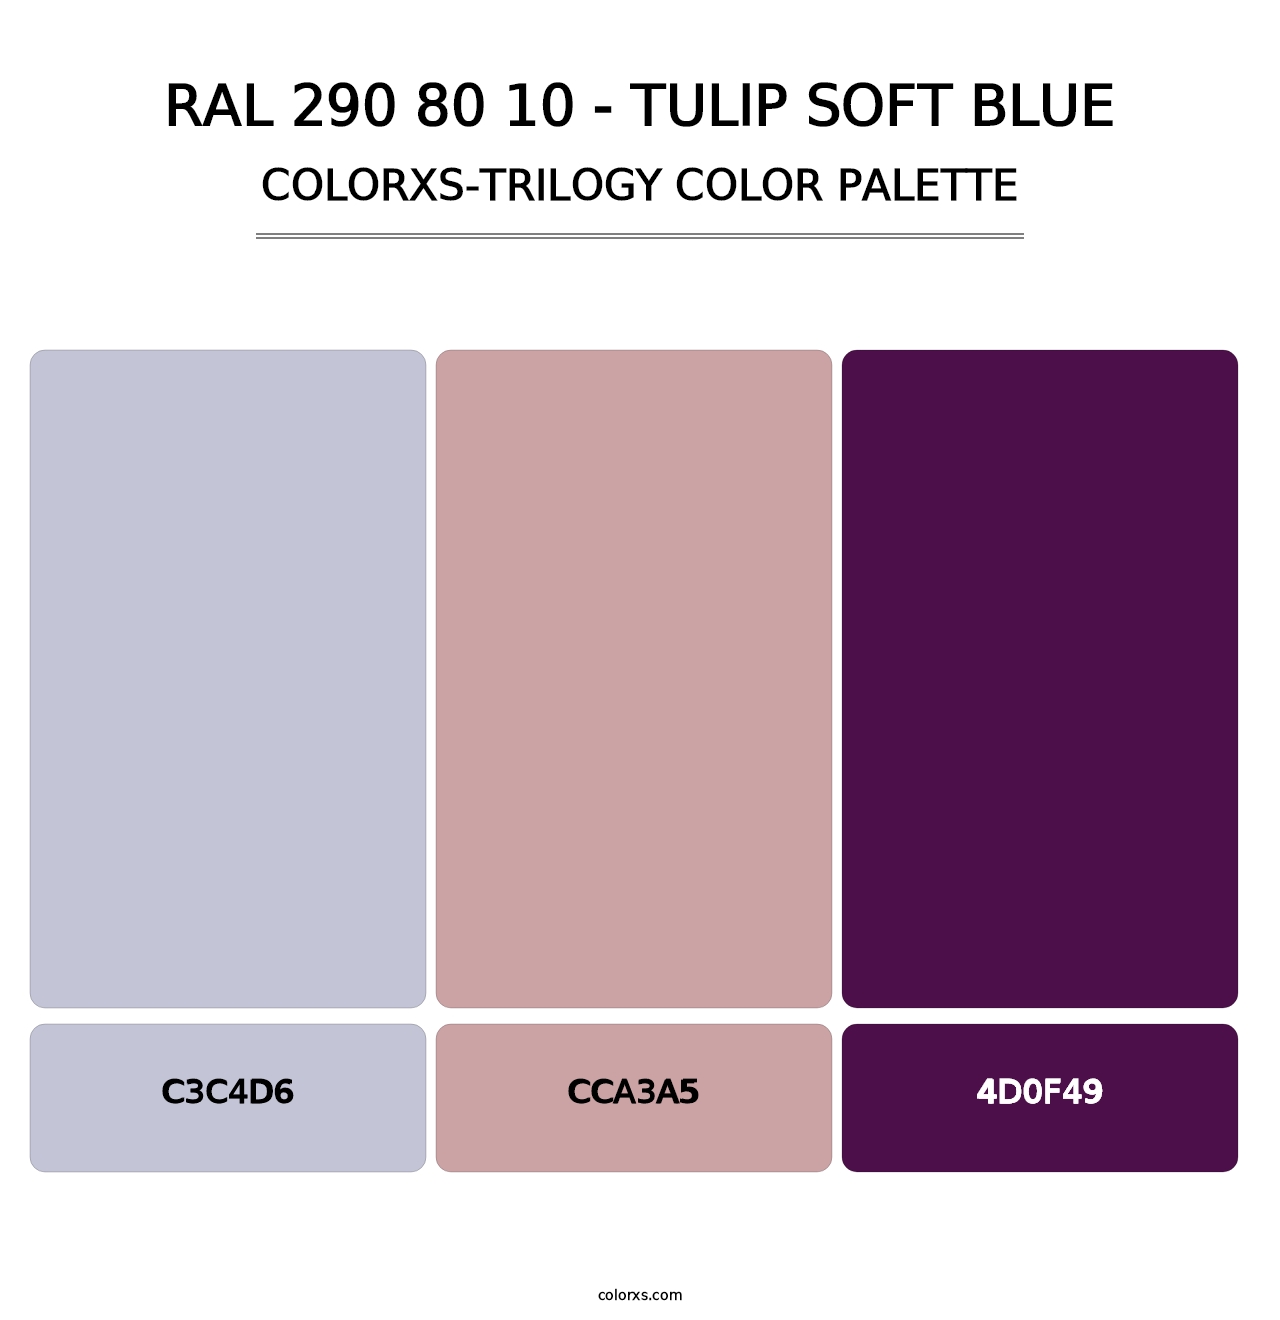 RAL 290 80 10 - Tulip Soft Blue - Colorxs Trilogy Palette